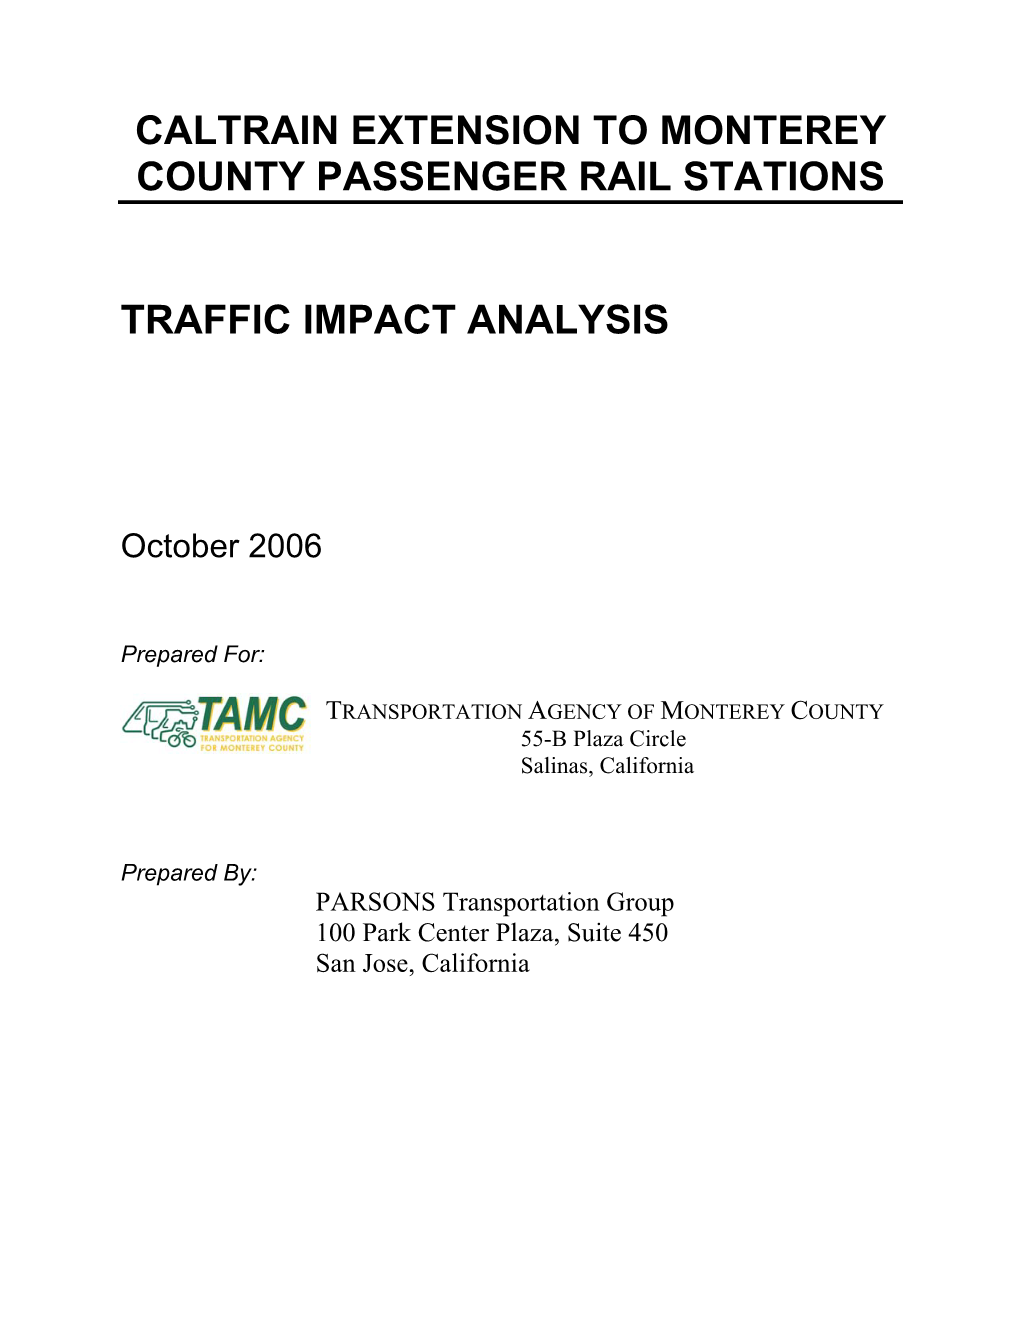 Traffic Impact Analysis